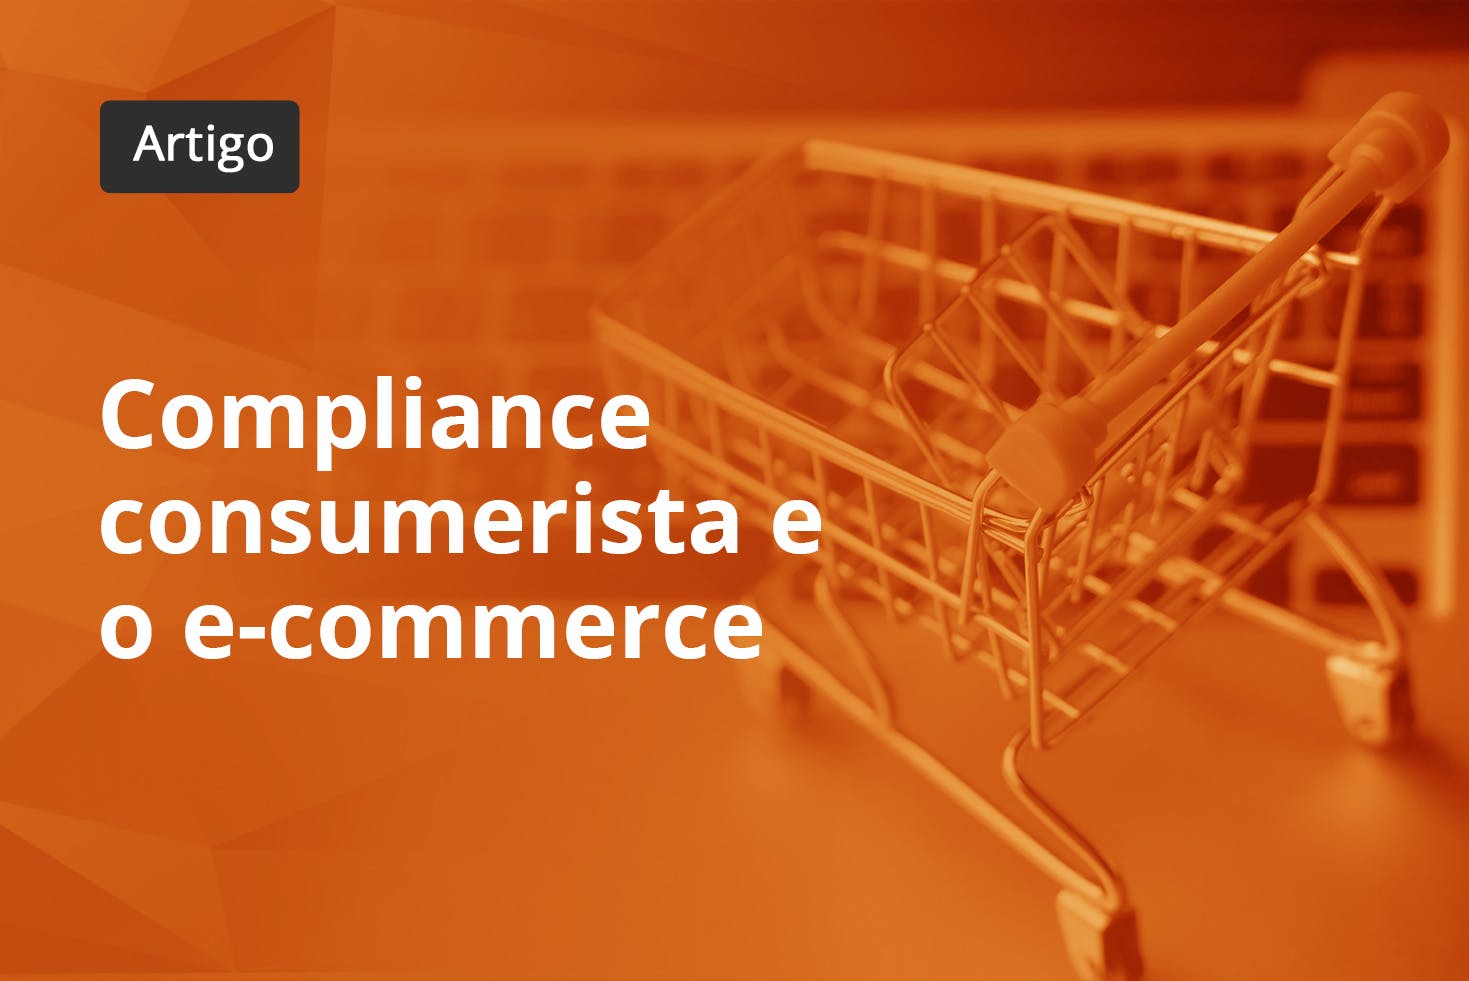 Compliance consumerista e o e-commerce